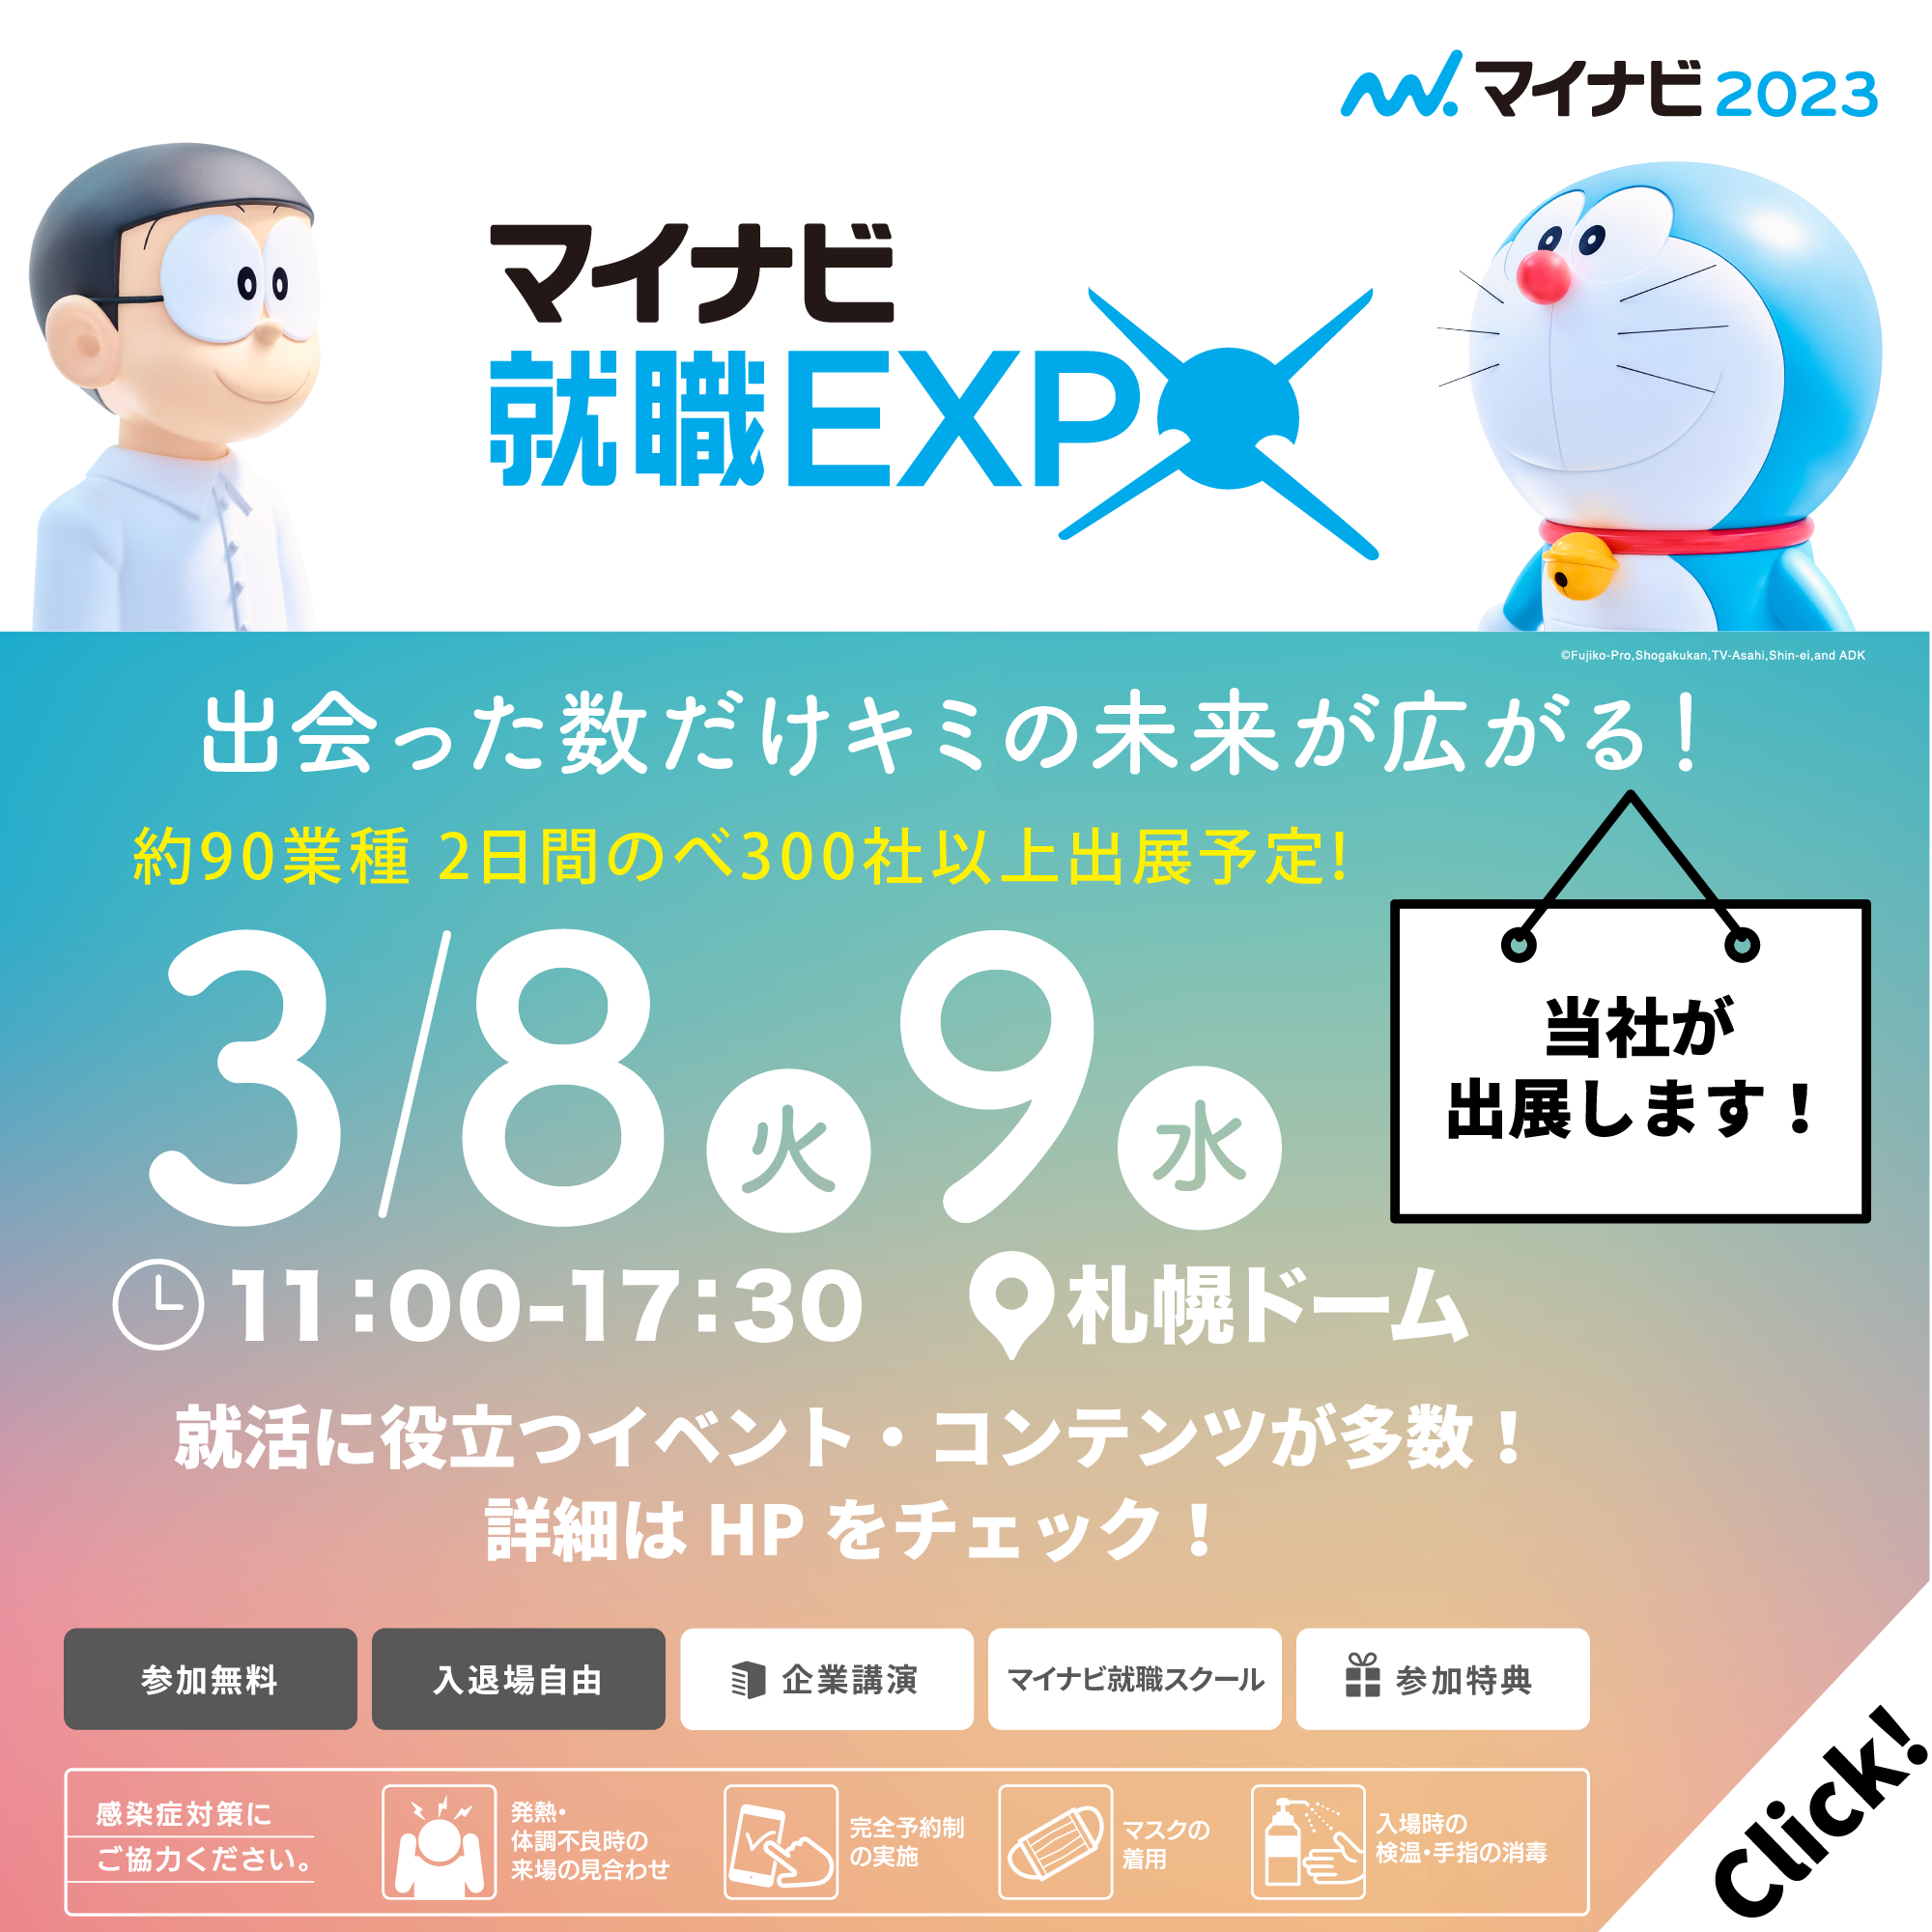 3月8日/9日【マイナビ就職EXPO北海道会場】に出展いたします‼